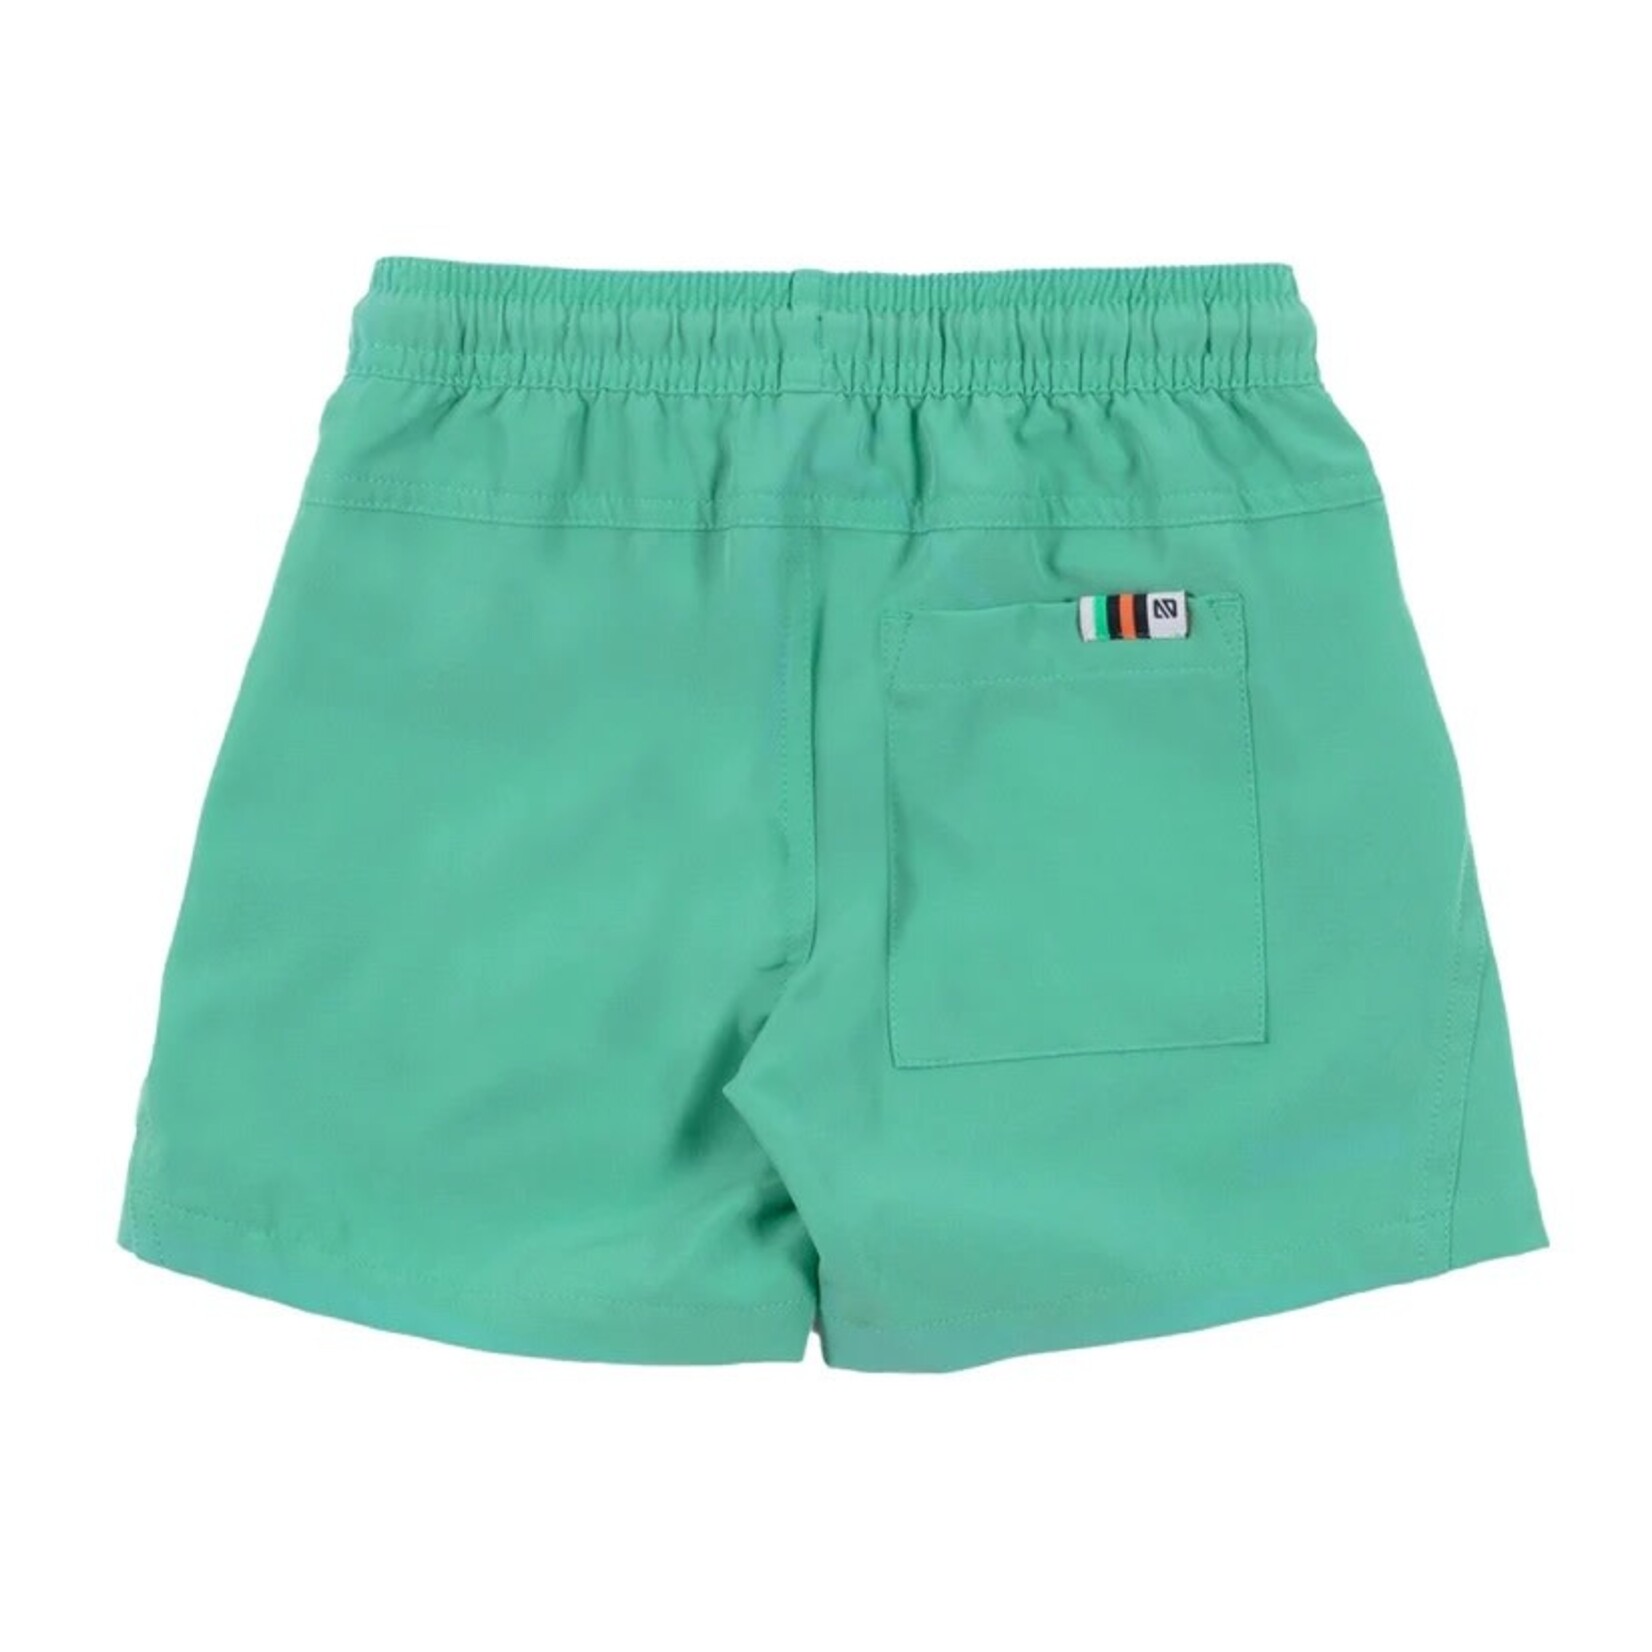 Nanö NANÖ - Soft plain mint green Bermuda shorts - 'Cap sur la méditerranée'